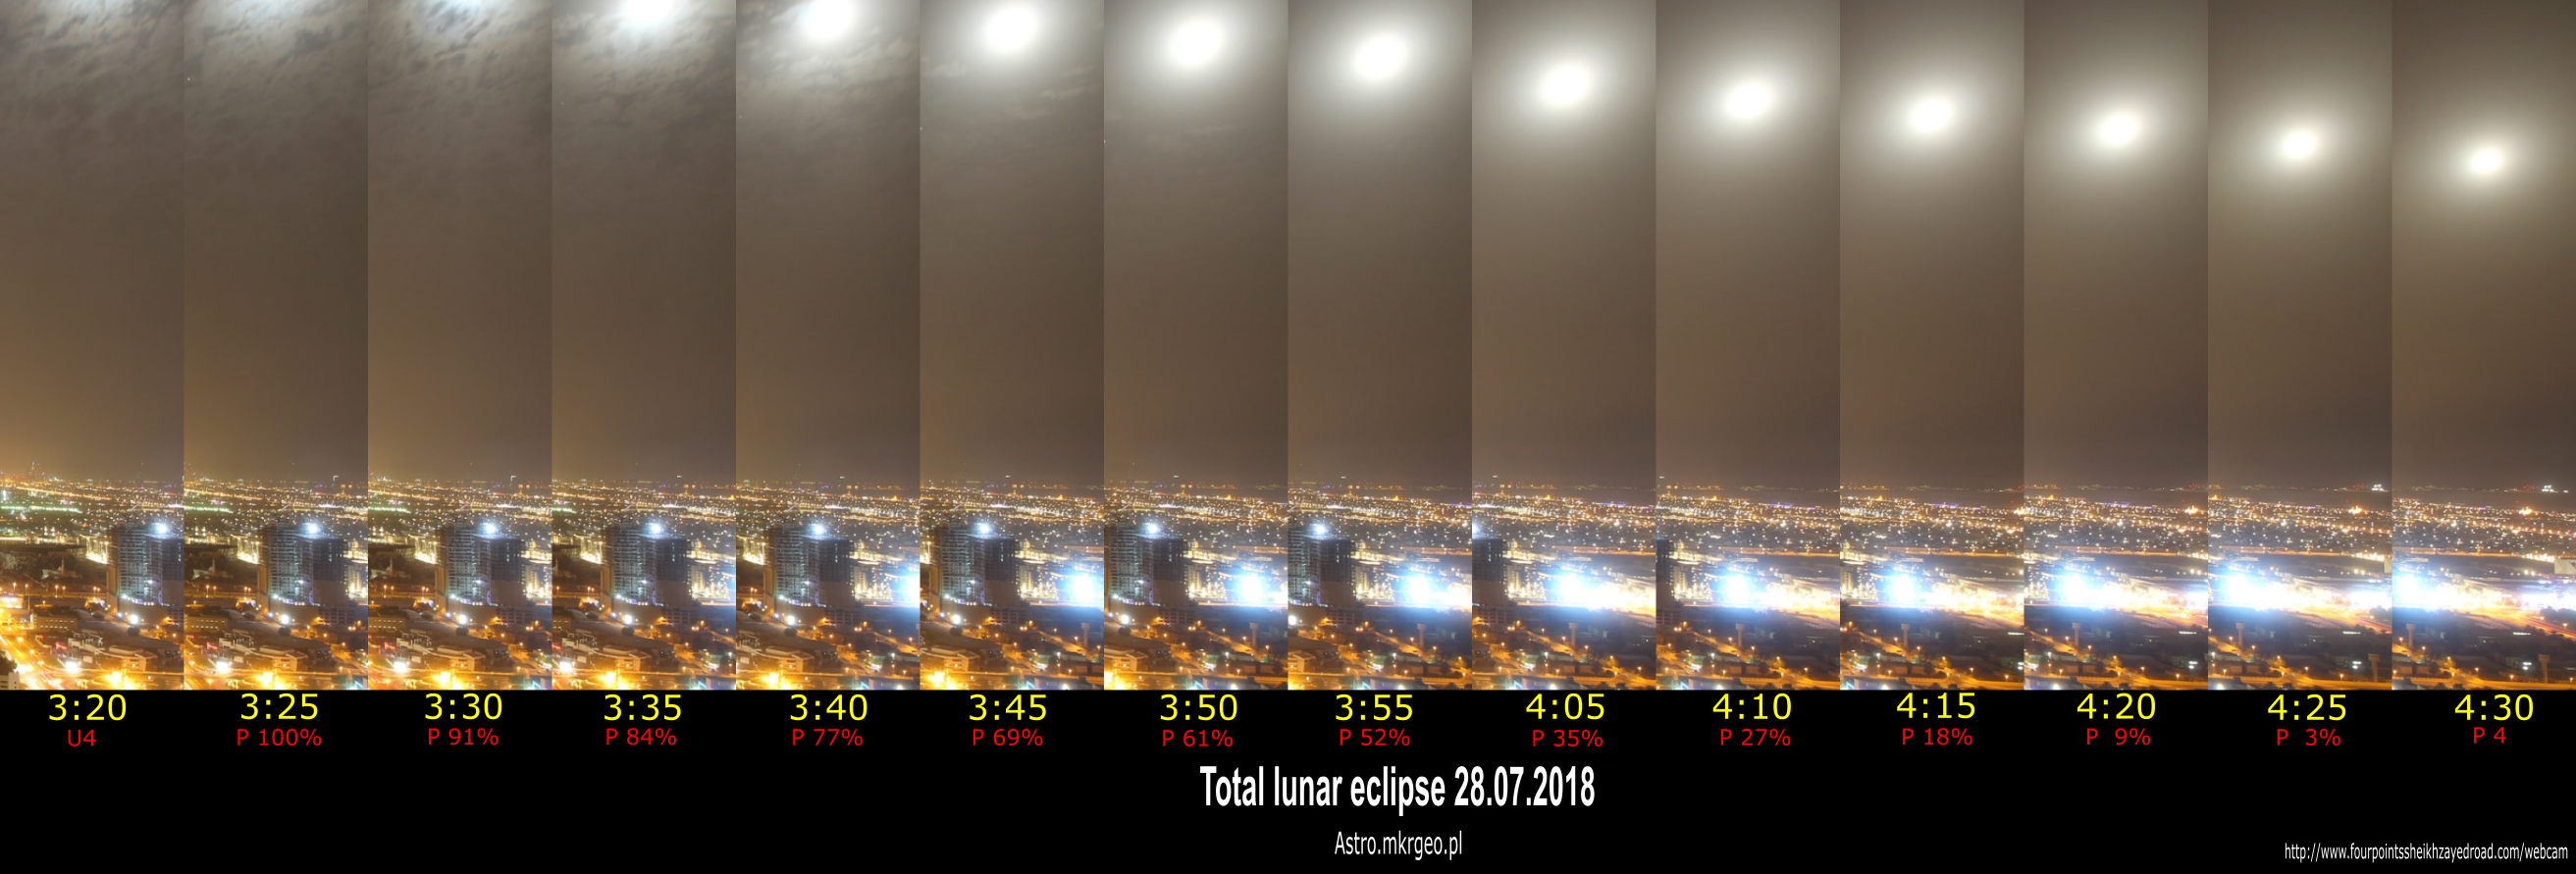 2018 total lunar eclipse in Dubai webcam compilation prenumbral phase